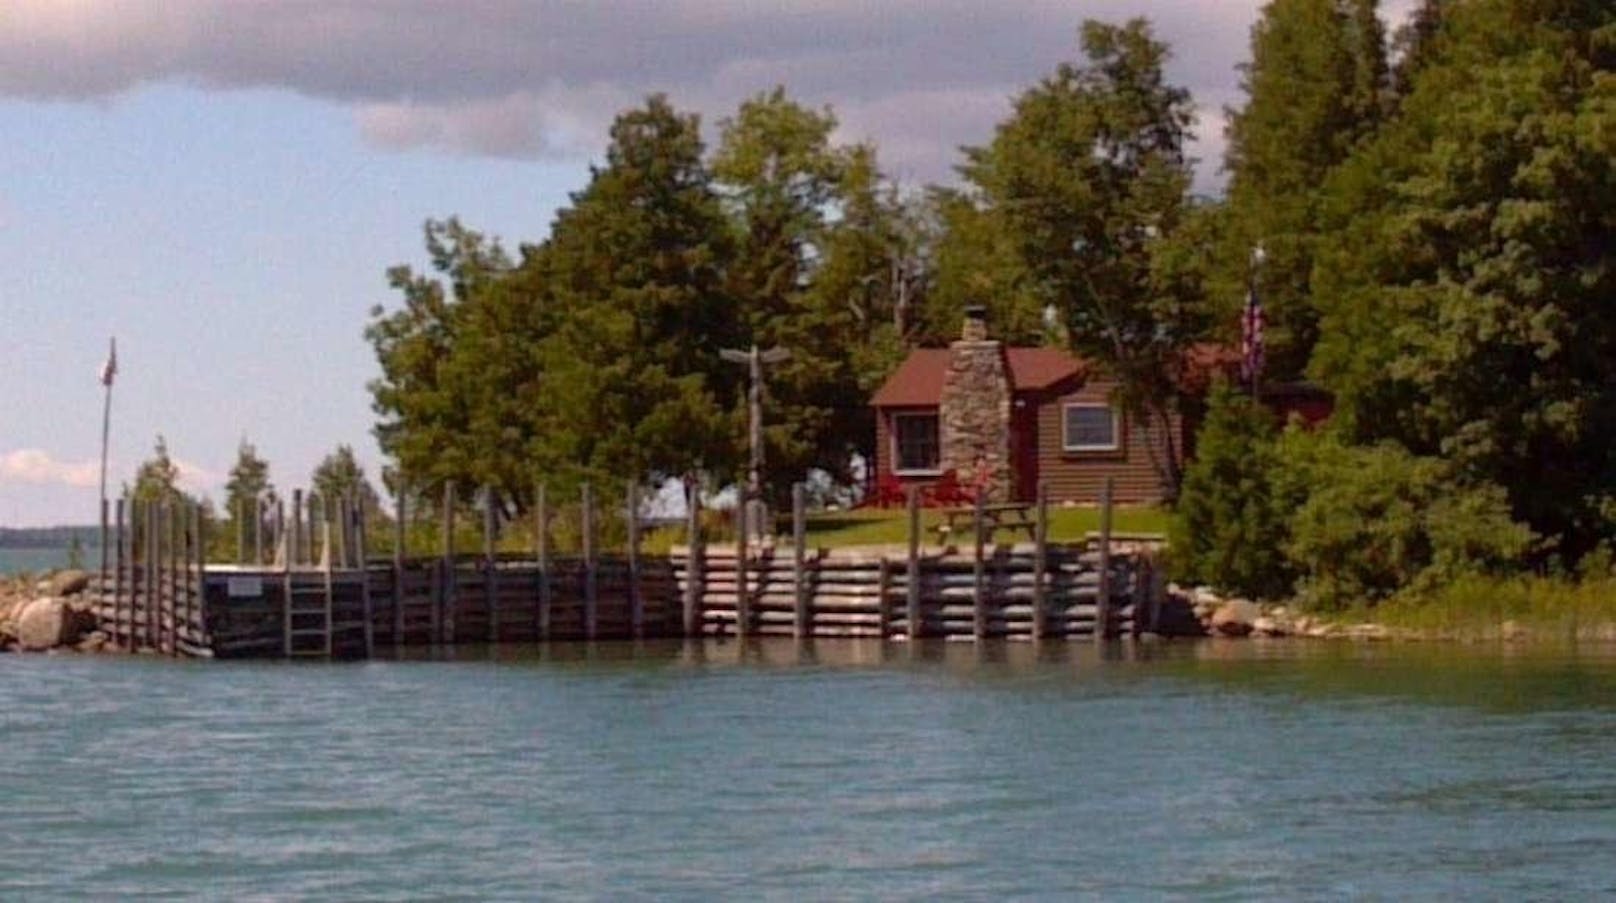 Im Haupthaus der Insel, die sich nur knapp 20 Kilometer vor der kanadischen Grenze befindet, gibt es zwei Schlafzimmer, ein Cheminée, ein Bad und eine Kläranlage.